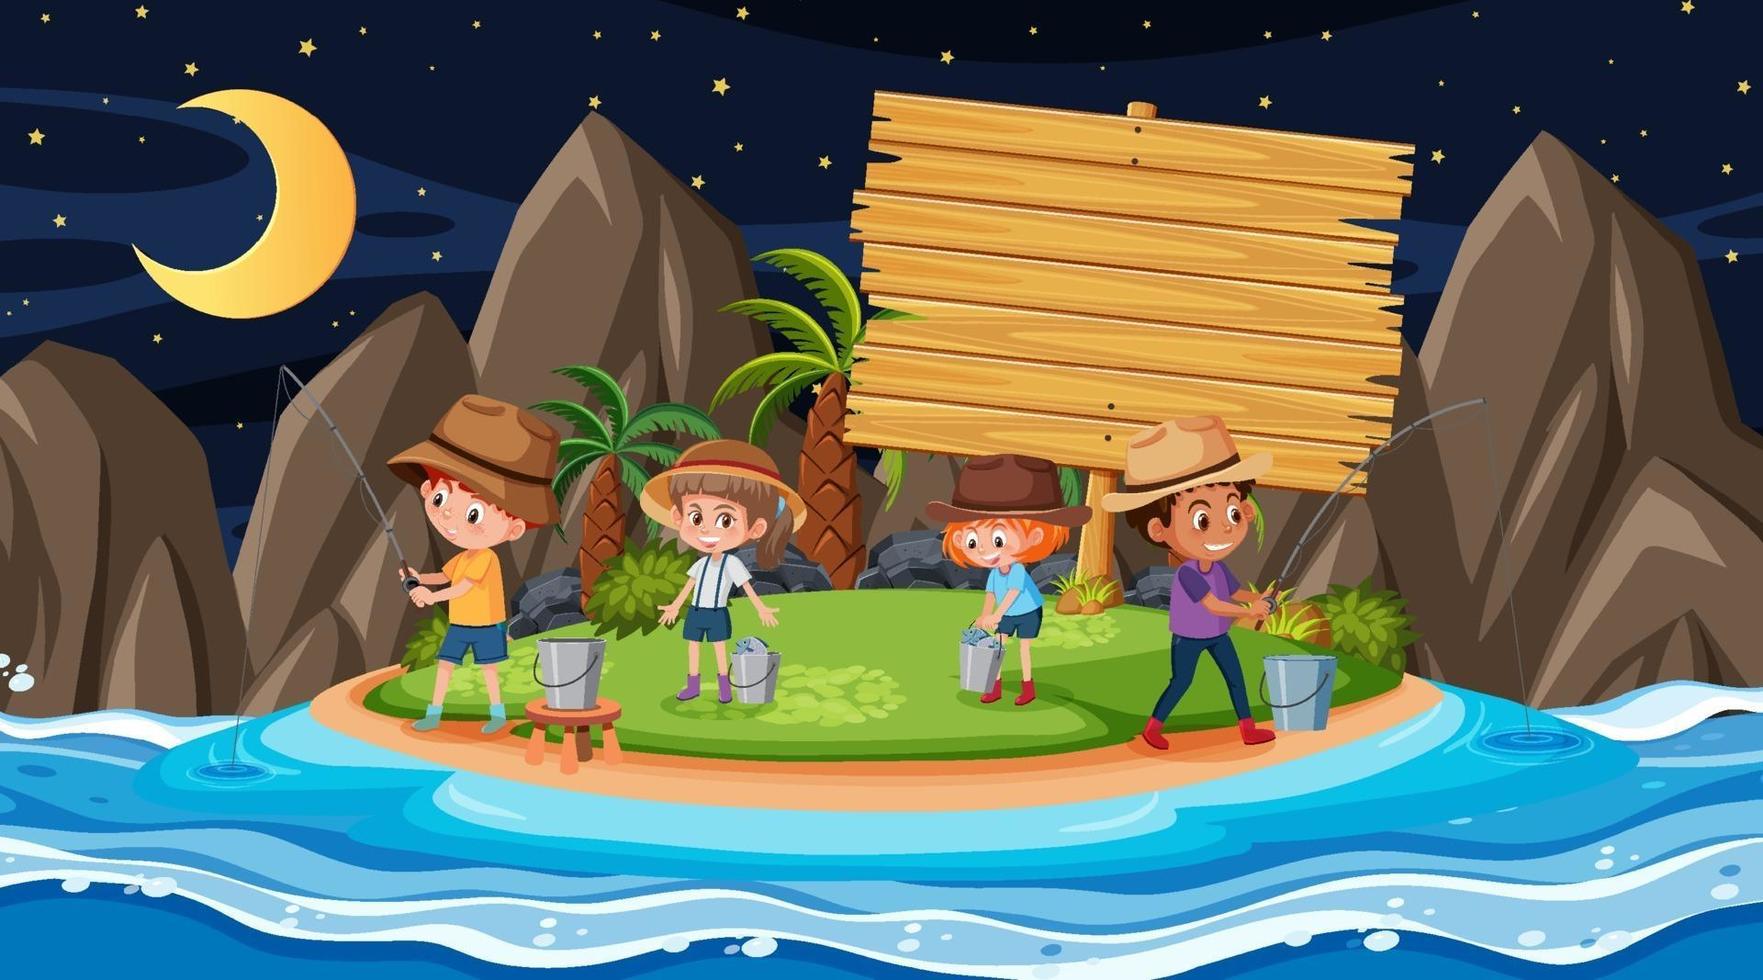 niños de vacaciones en la playa escena nocturna con una pancarta de madera vacía vector